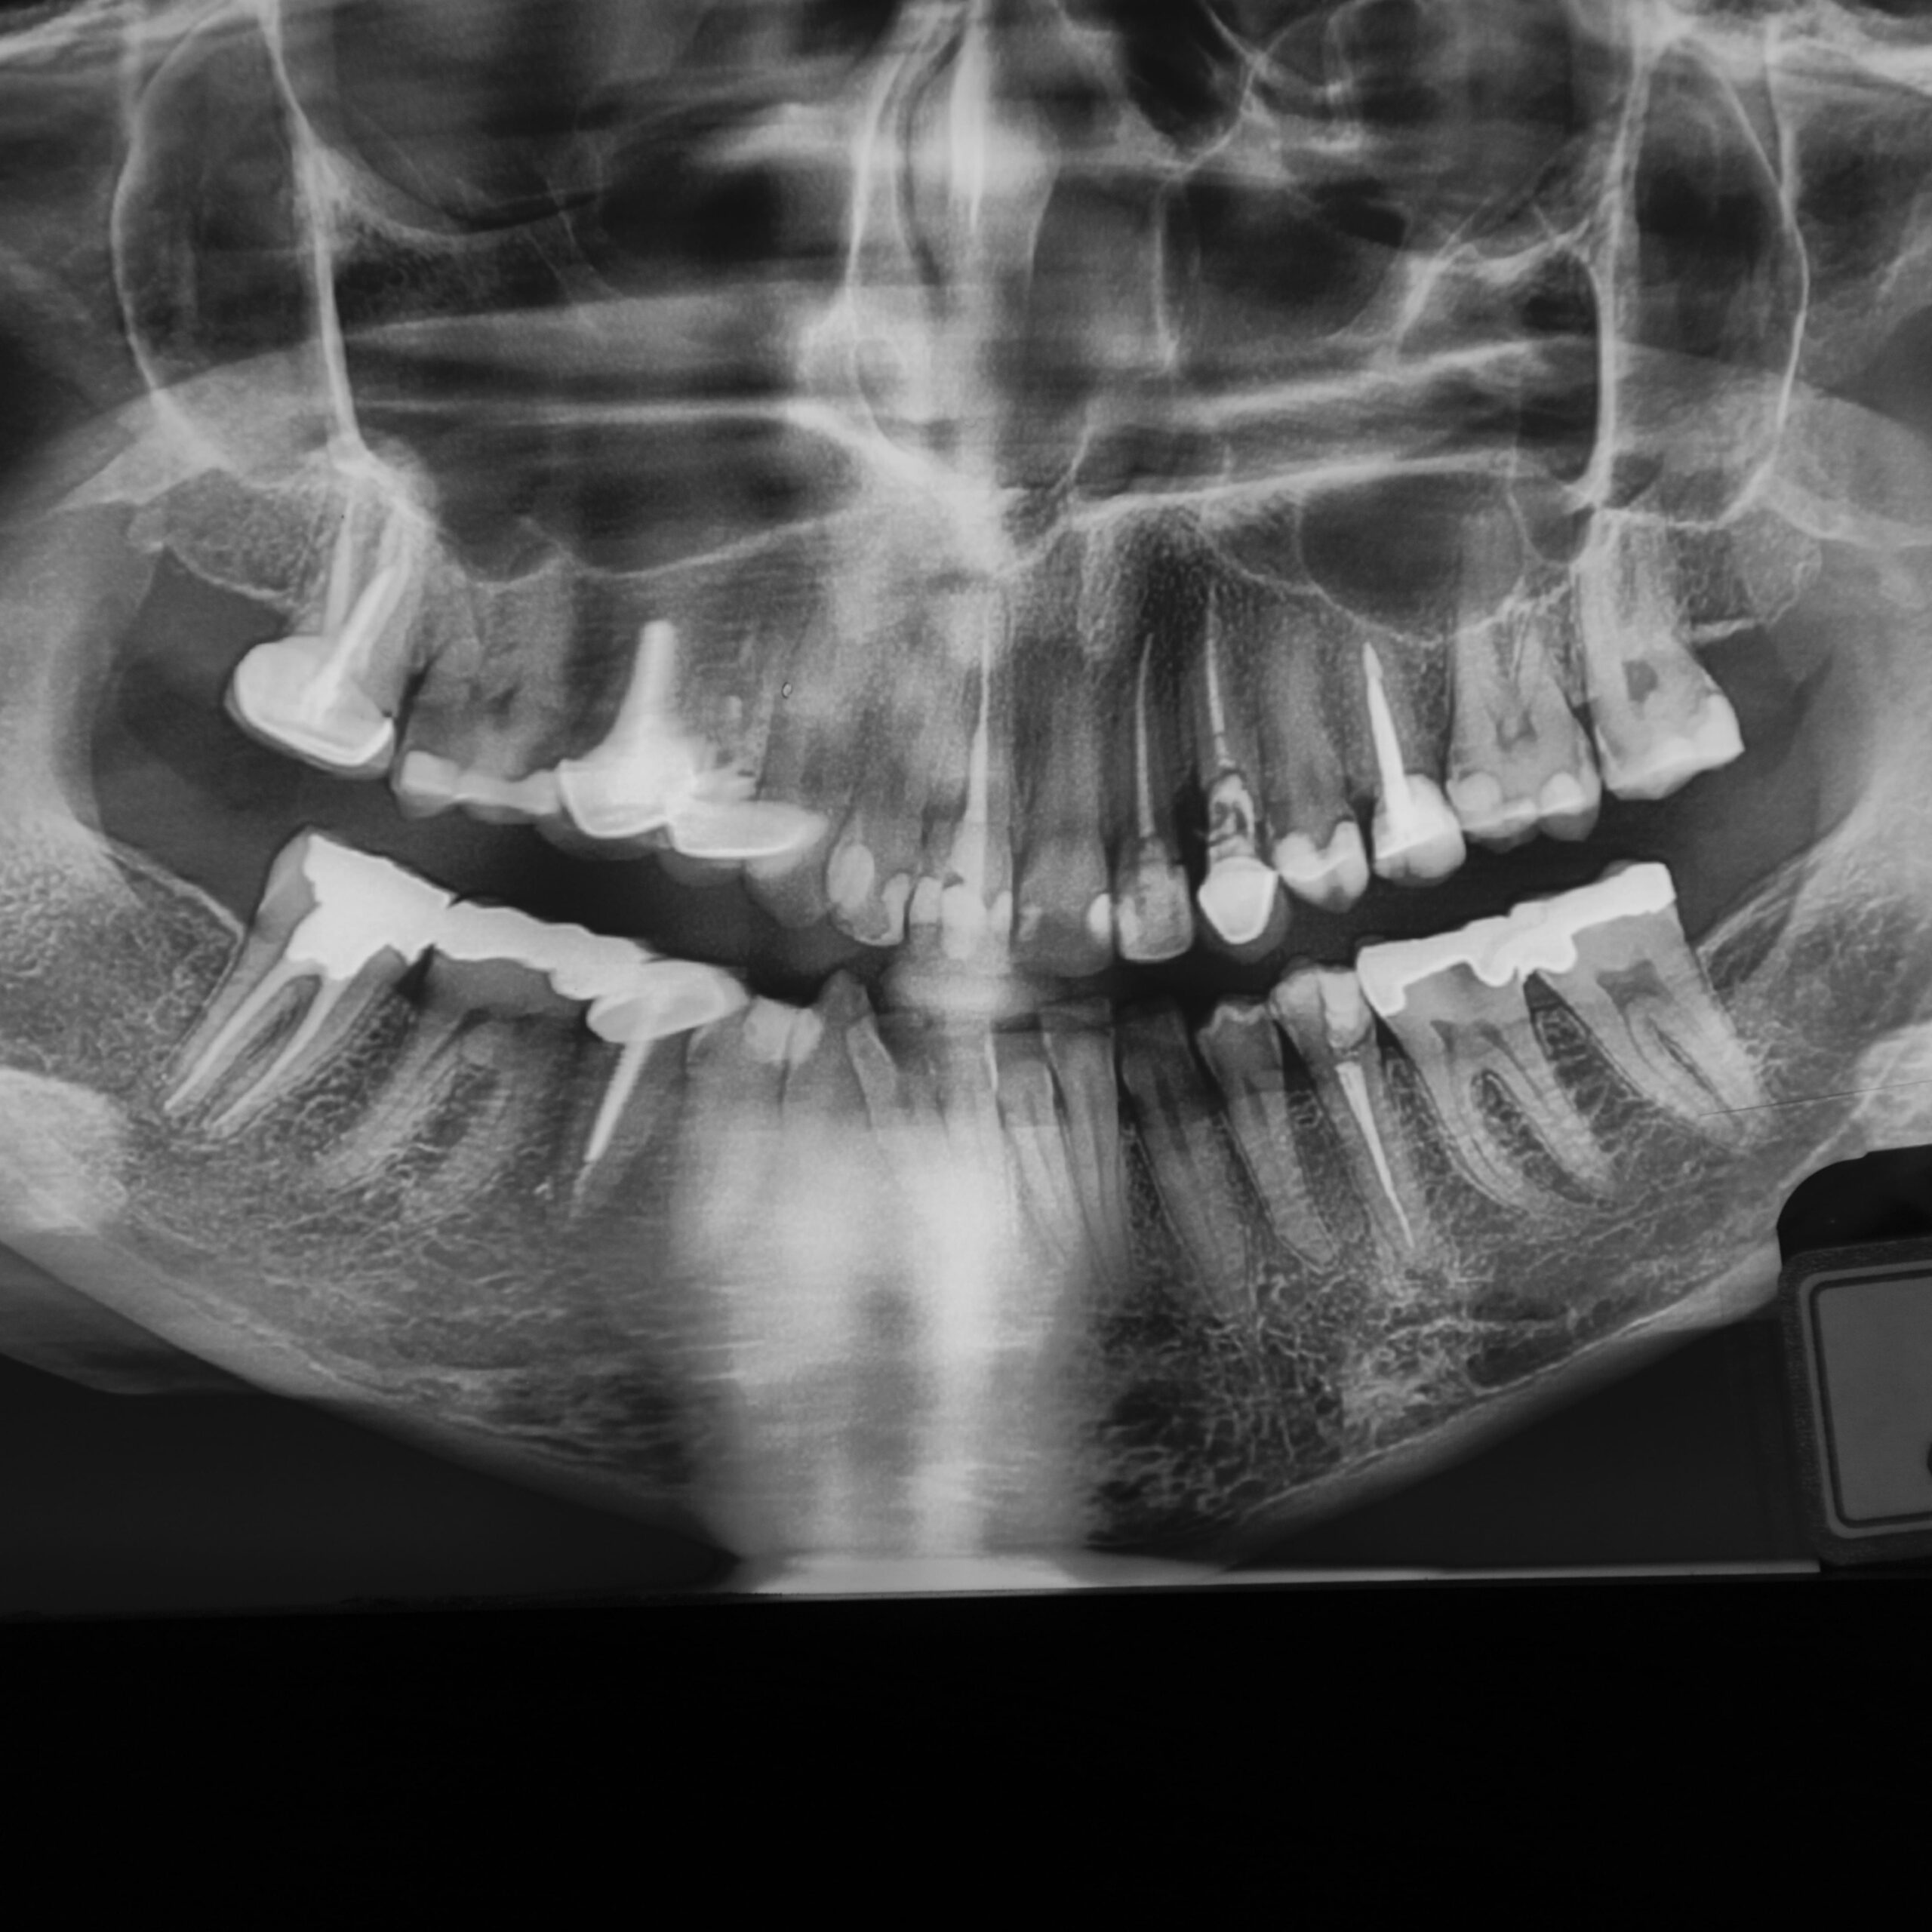 خارج کردن دندان و بازسازی استخوان